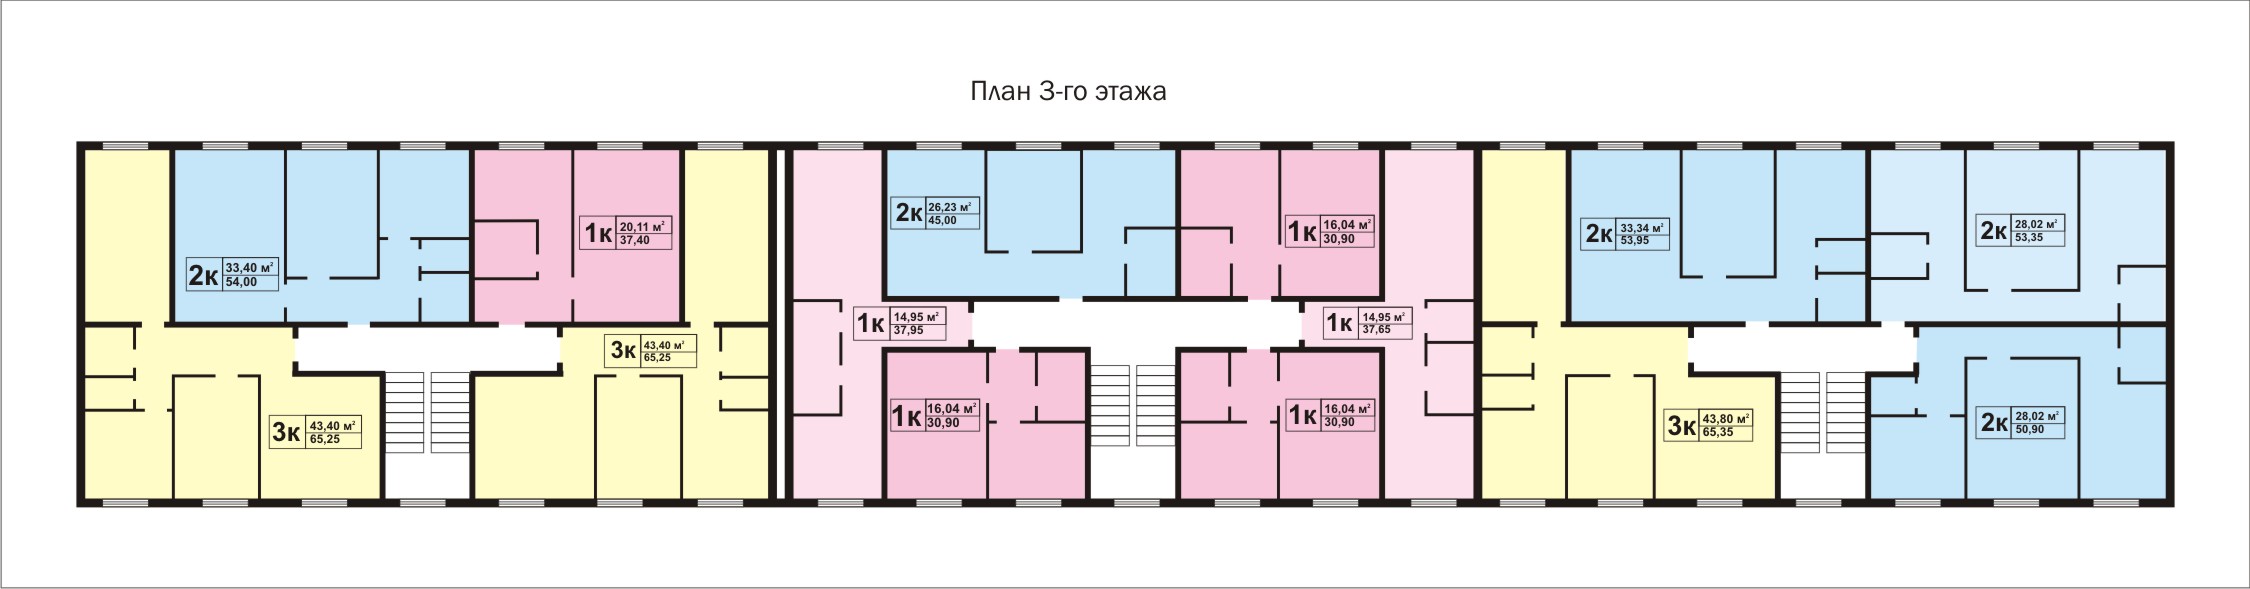 План 3-го этажа типового дома